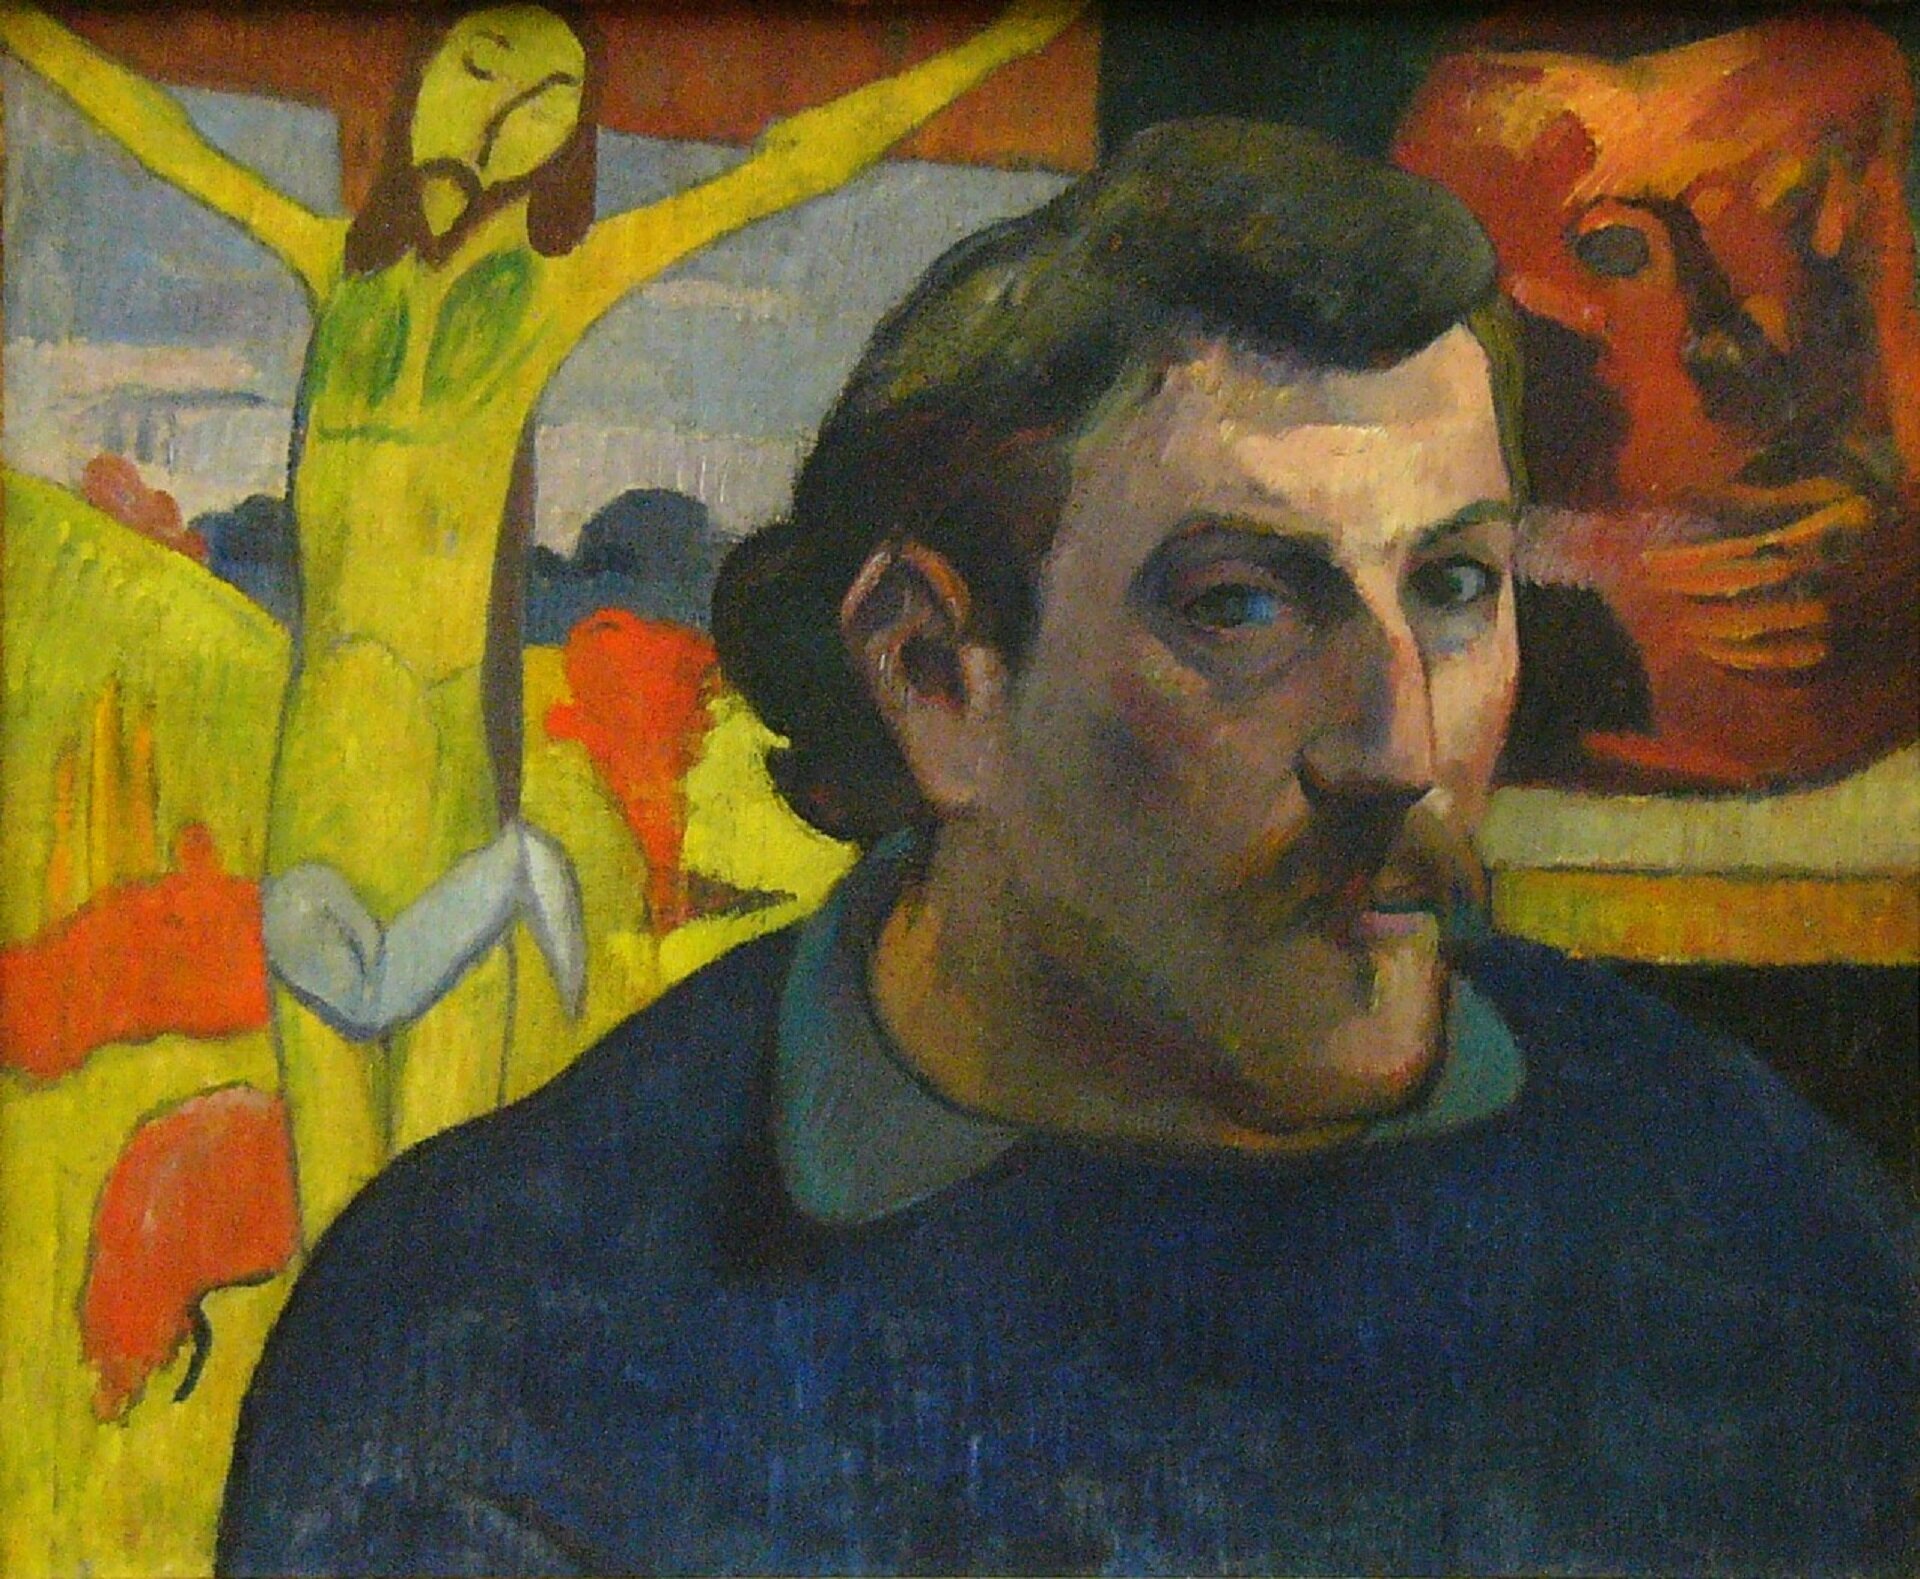 „Autoportret z żółtym Chrystusem” Paula Gauguina przedstawia zbliżenie postaci artysty. Po jego lewej stronie znajduje się fragment krzyża z Chrystusem w żółtych kolorach, a po prawej wisi na ścianie obraz. 